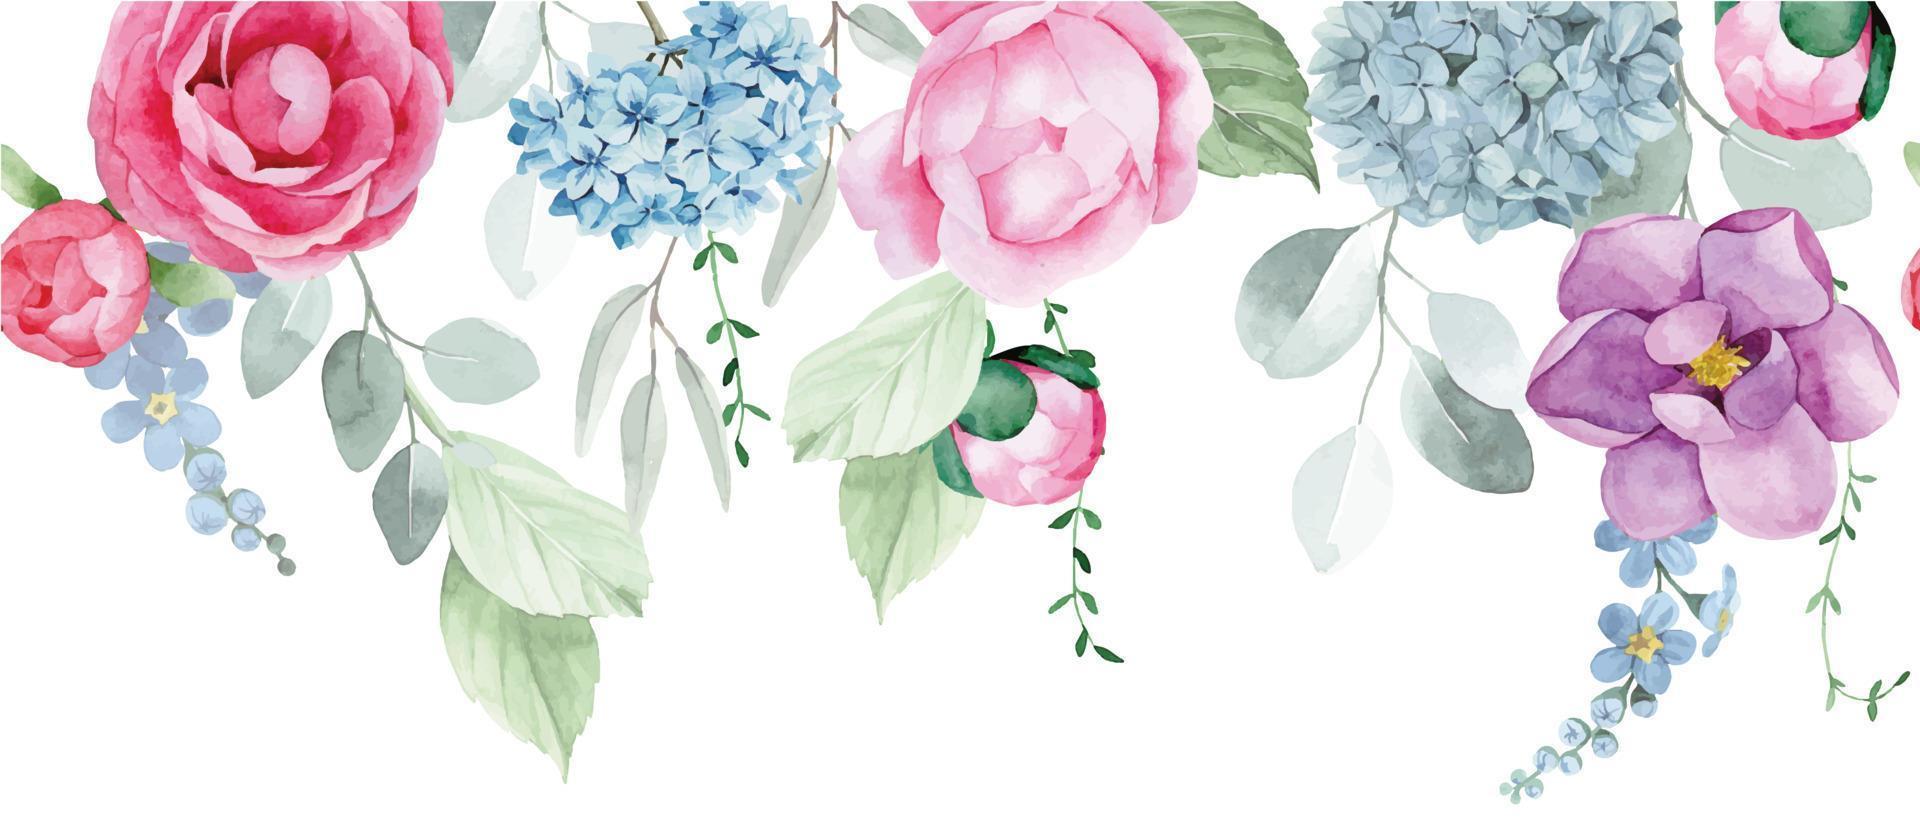 bordure transparente aquarelle, cadre avec fleurs et feuilles d'eucalyptus. fleurs de pivoine rose, roses et fleurs d'hortensia bleu. impression délicate, bannière horizontale vecteur